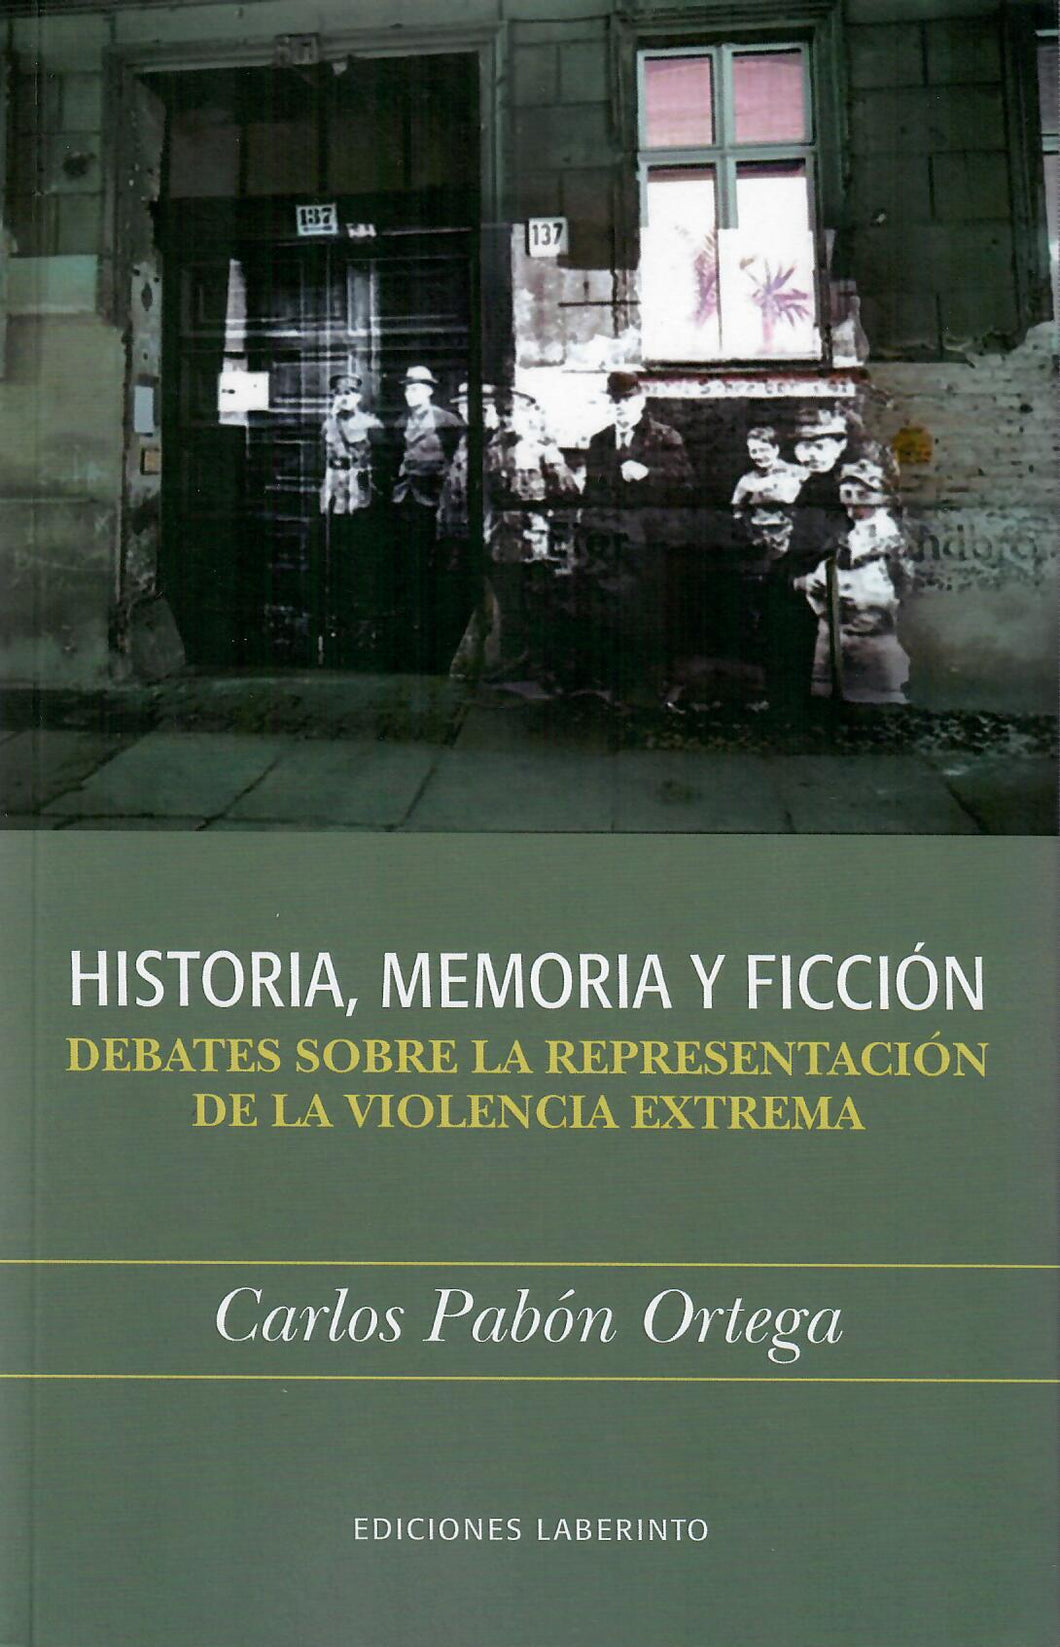 HISTORIA, MEMORIA Y FICCIÓN: DEBATES SOBRE LA REPRESENTACIÓN DE LA VIOLENCIA EXTREMA - Carlos Pabón Ortega